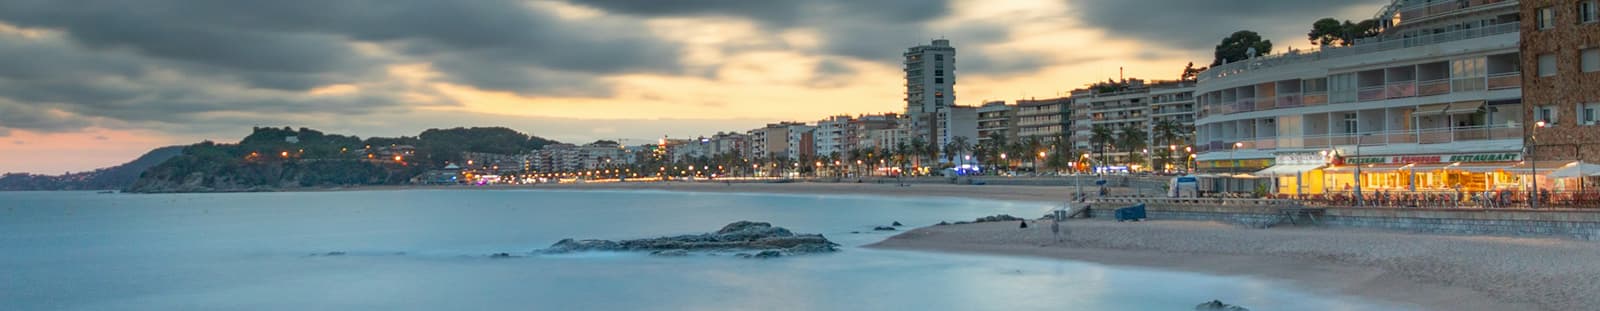 Vue panoramique de la ville de Lloret de mar